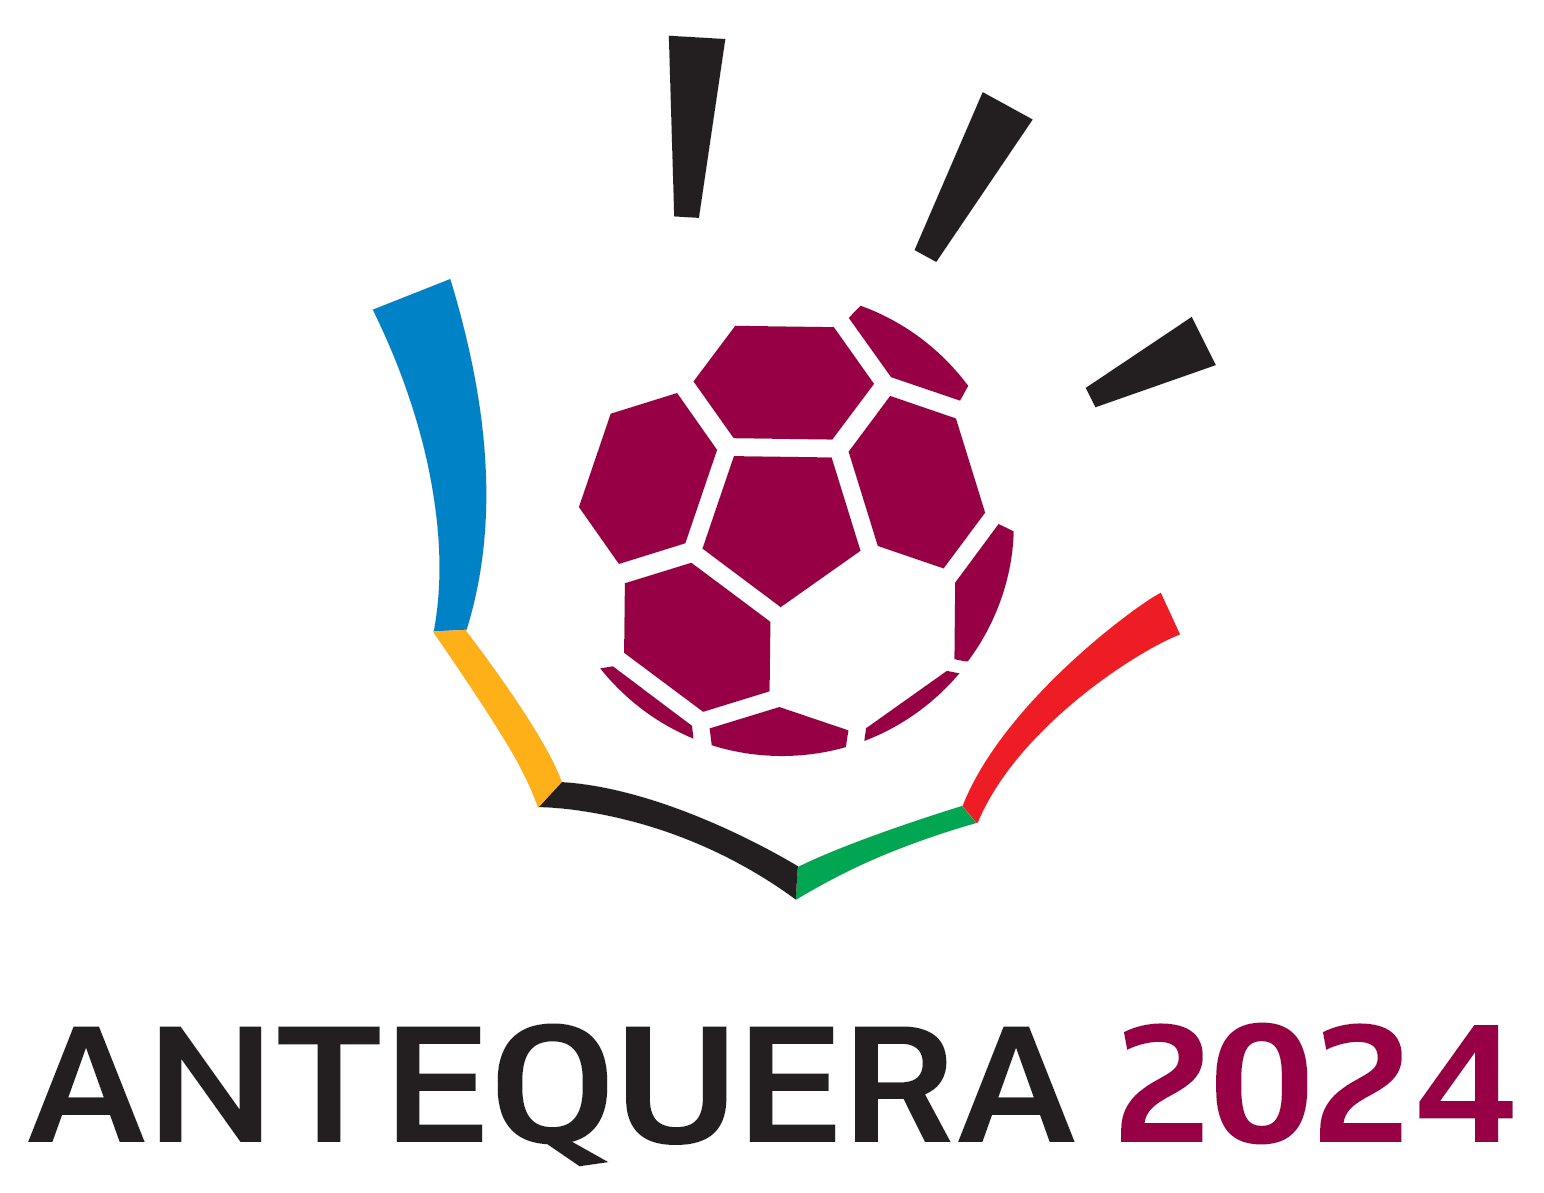 Handball2024 logo